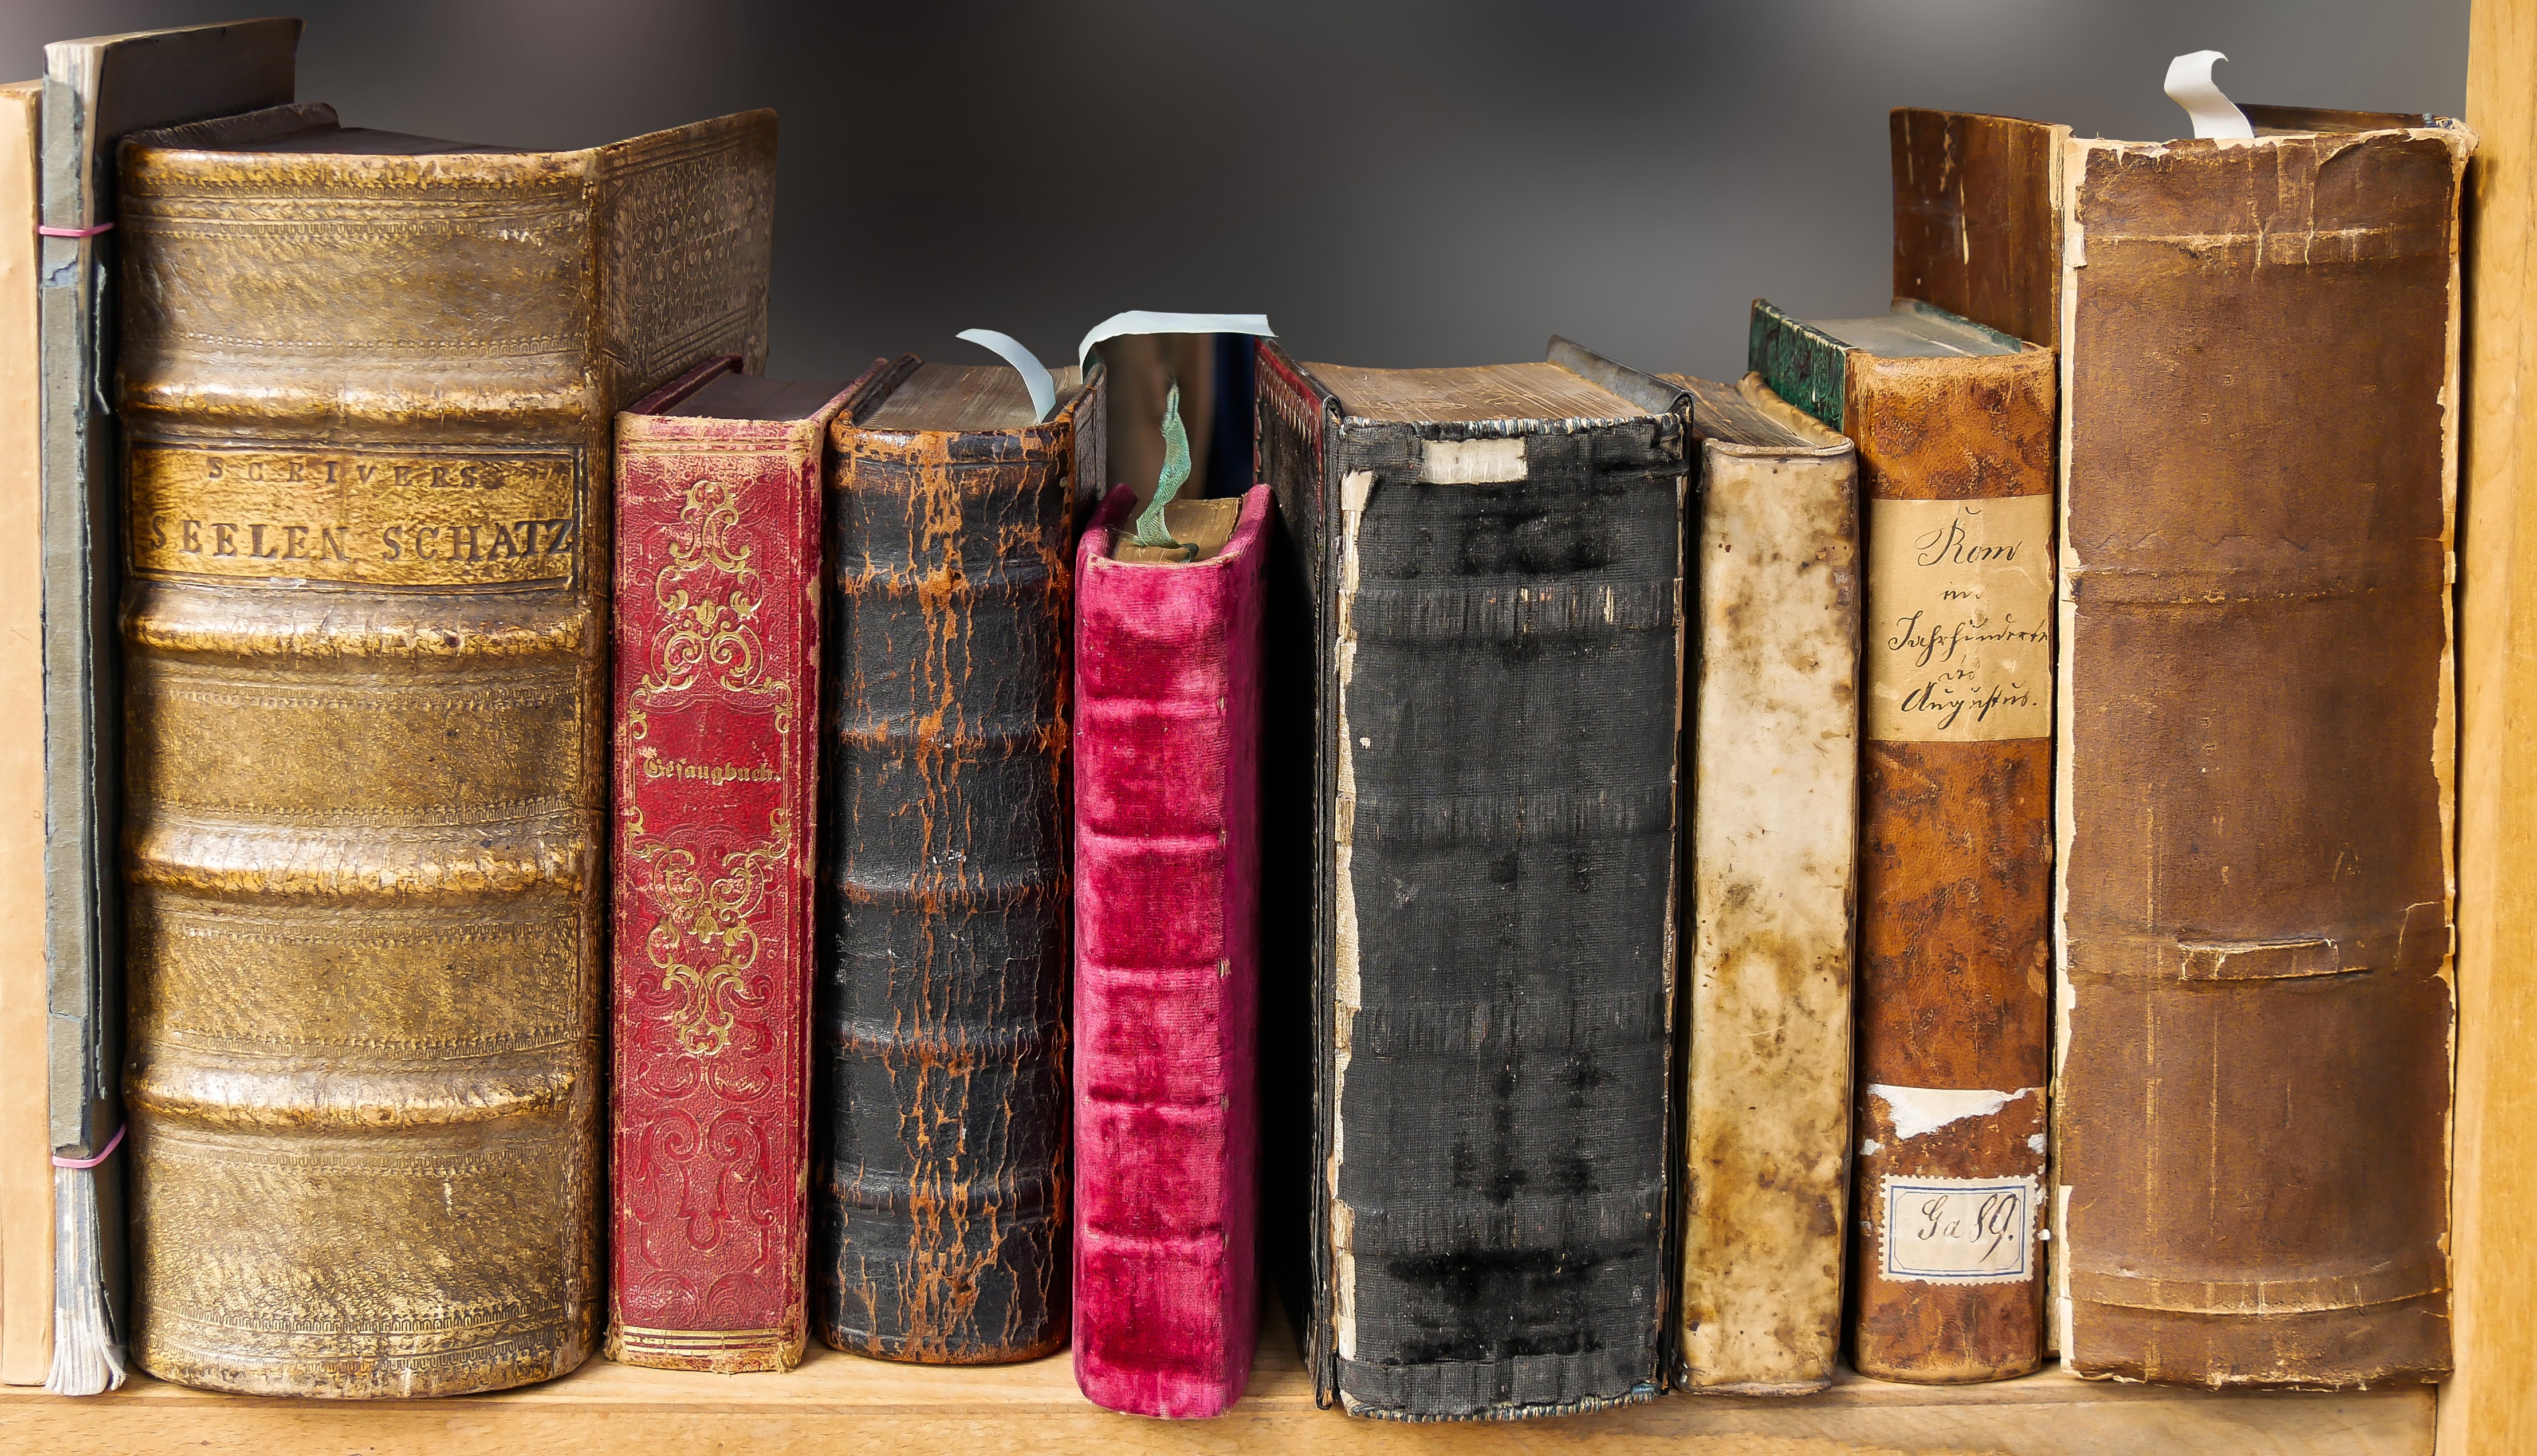 Чем опасны старые книги и как их сделать безопасными